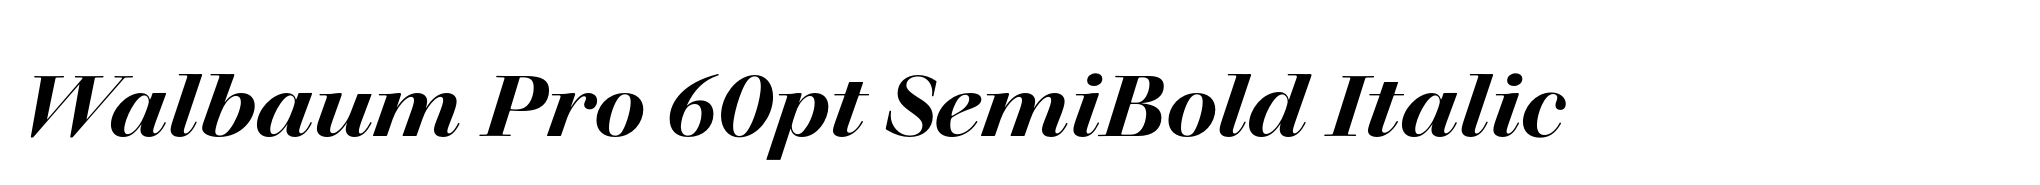 Walbaum Pro 60pt SemiBold Italic image